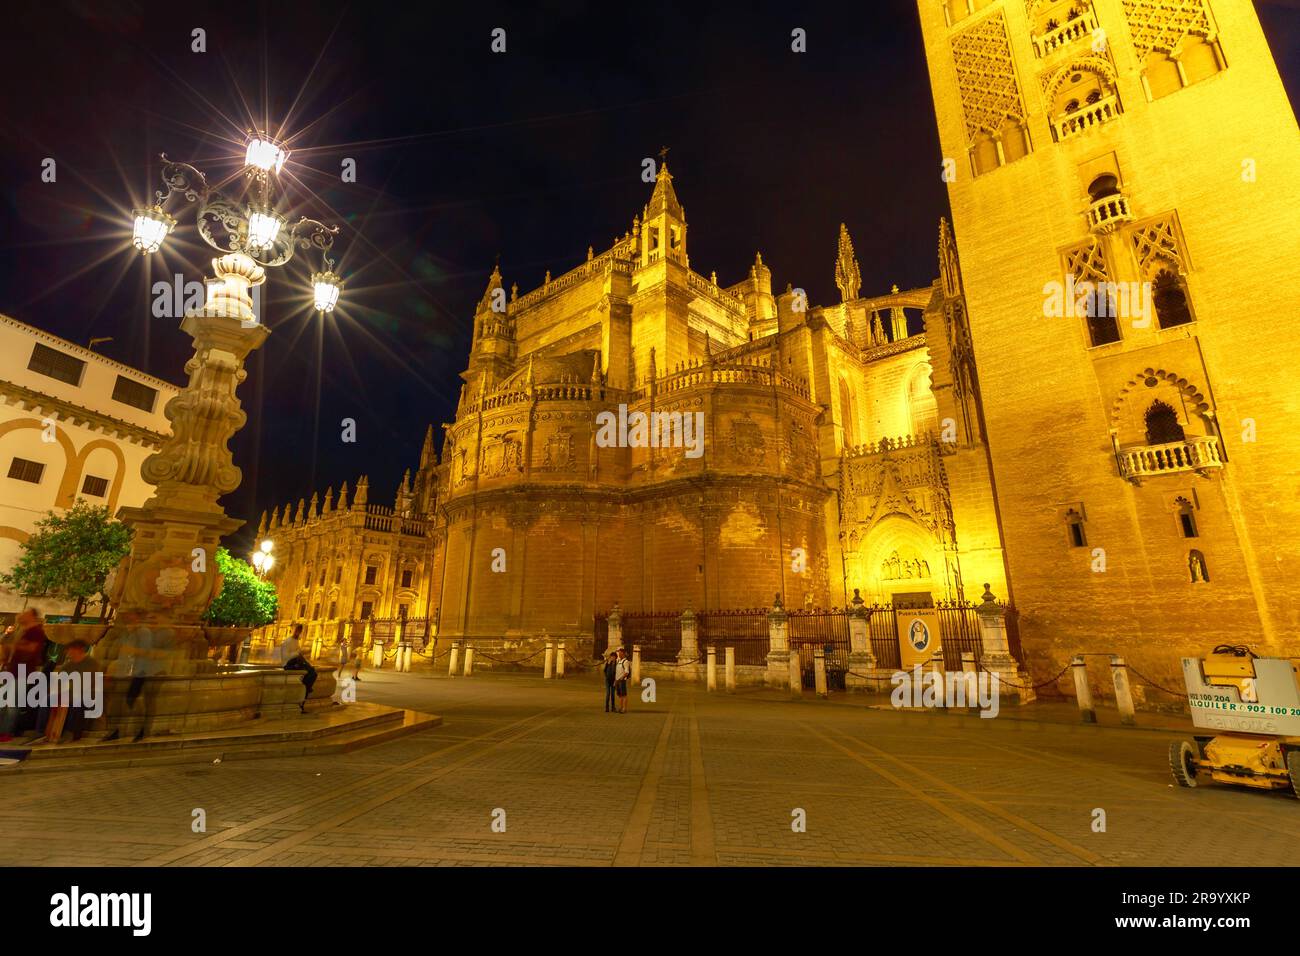 Siviglia, Andalusia, Spagna - 18 aprile 2016: Cattedrale di Siviglia, attrazioni turistiche di Siviglia. Cattedrale di Santa Maria della sede, cattolica romana Foto Stock